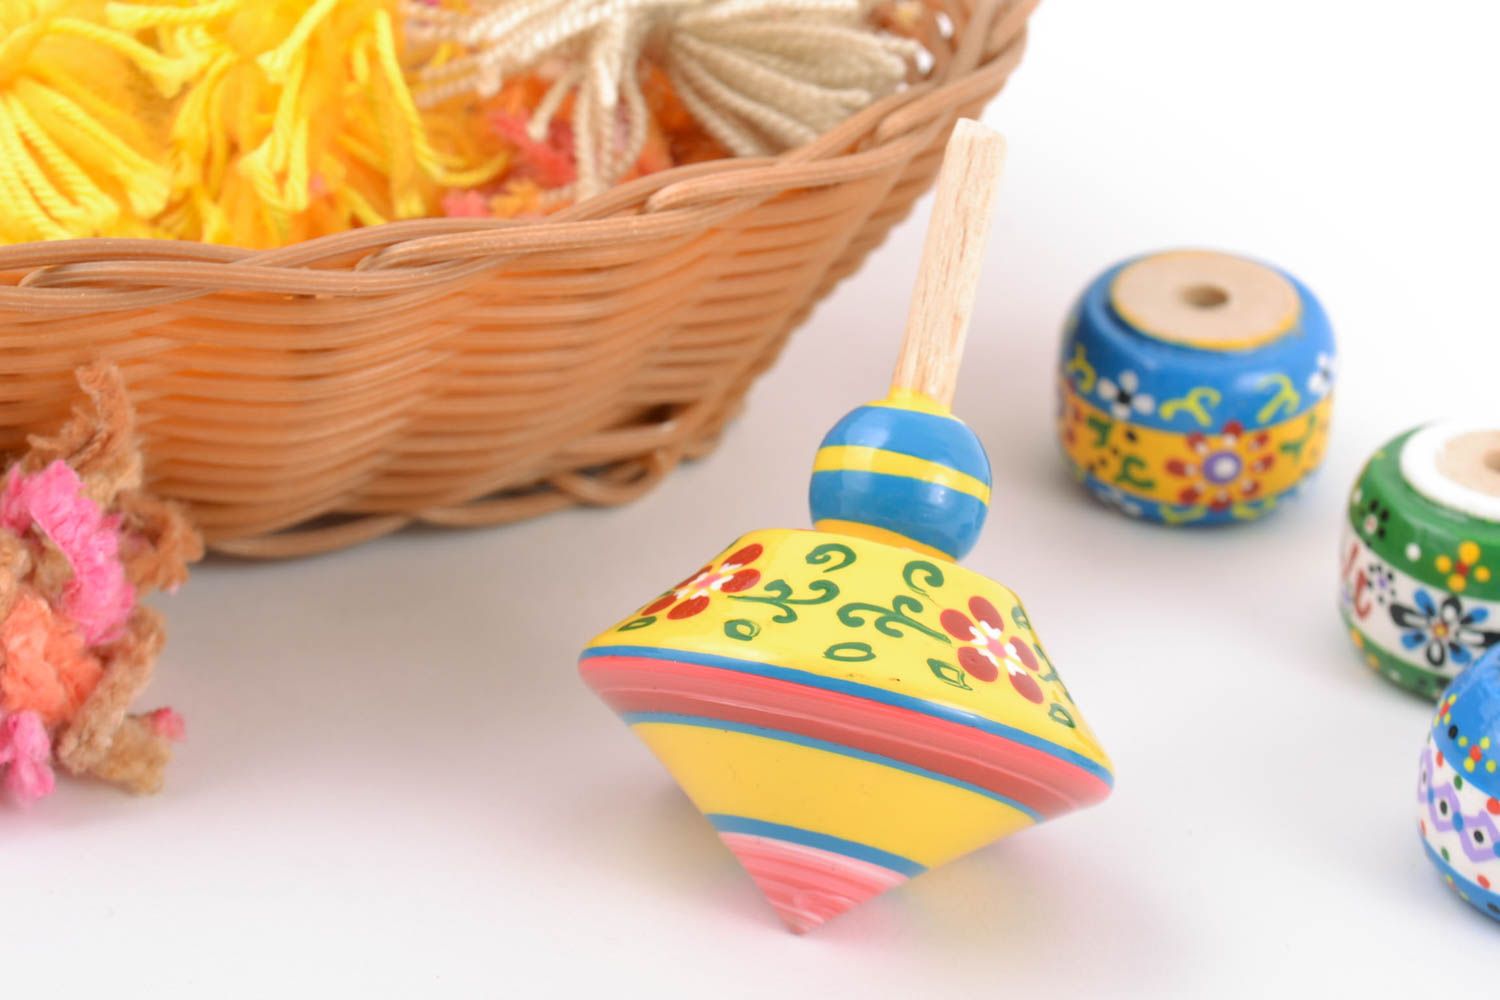 Оригинальная юла из дерева с росписью эко-красками детская игрушка ручной работы фото 1